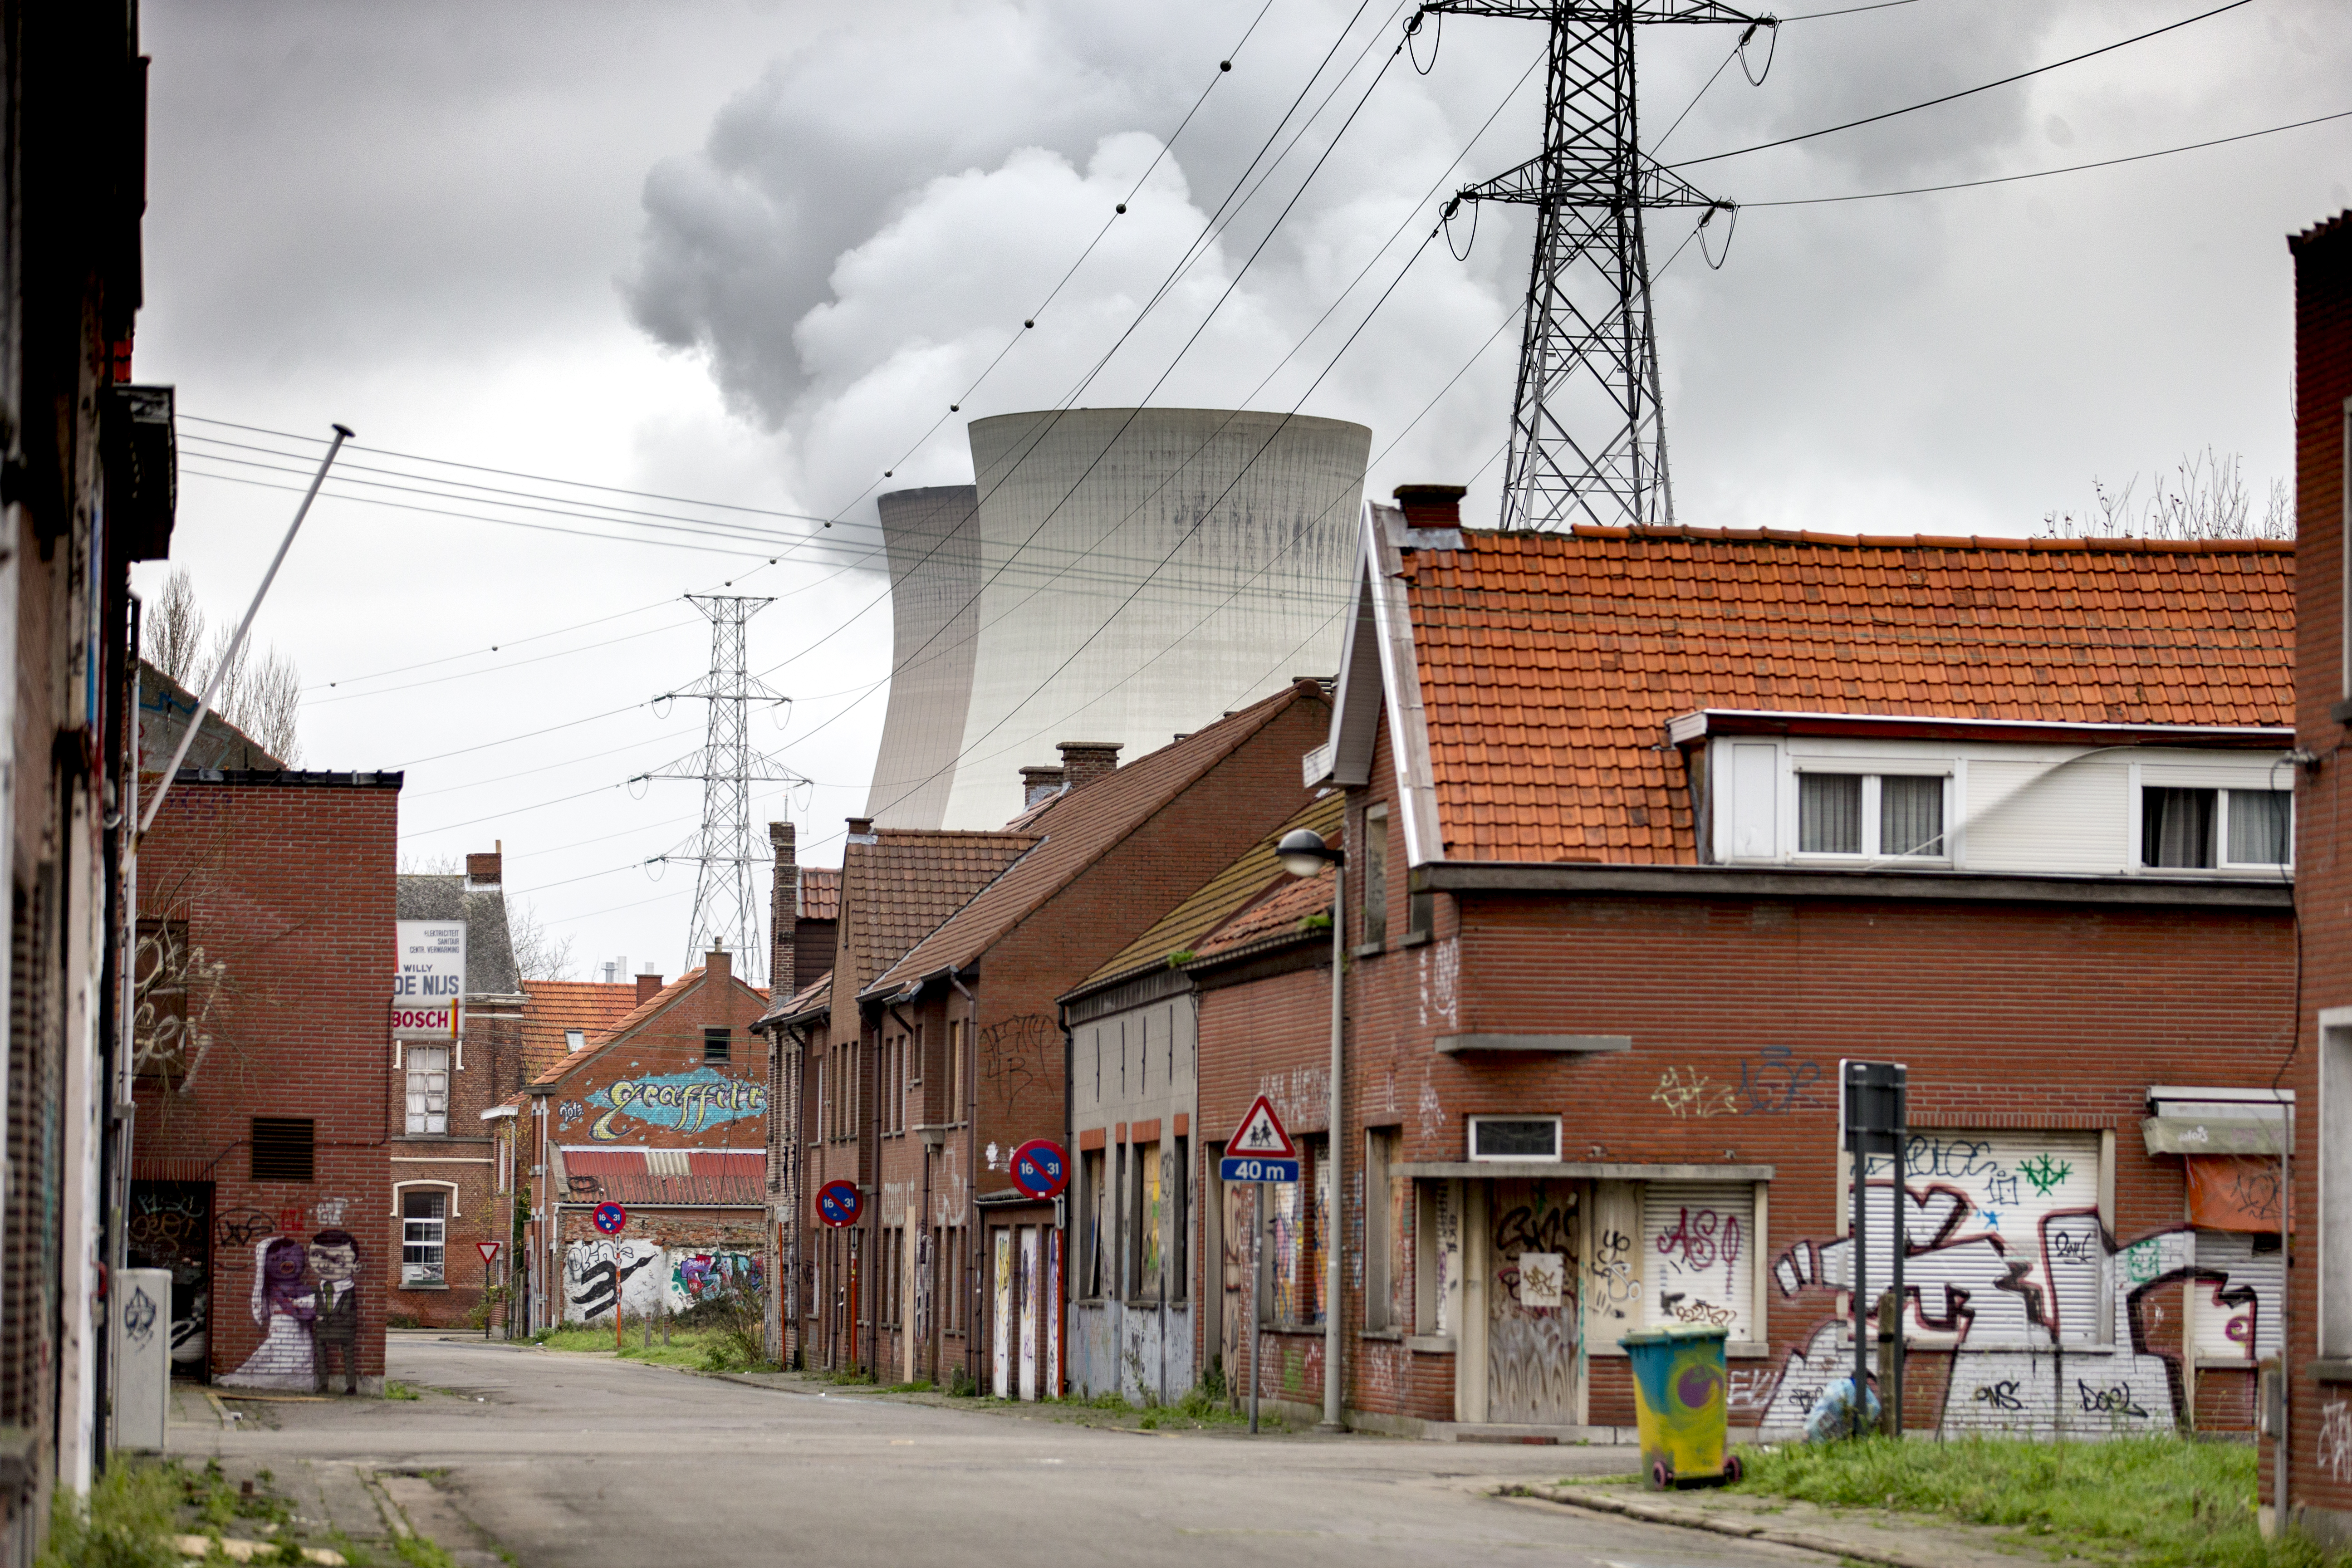 doel, kerncentrale, België